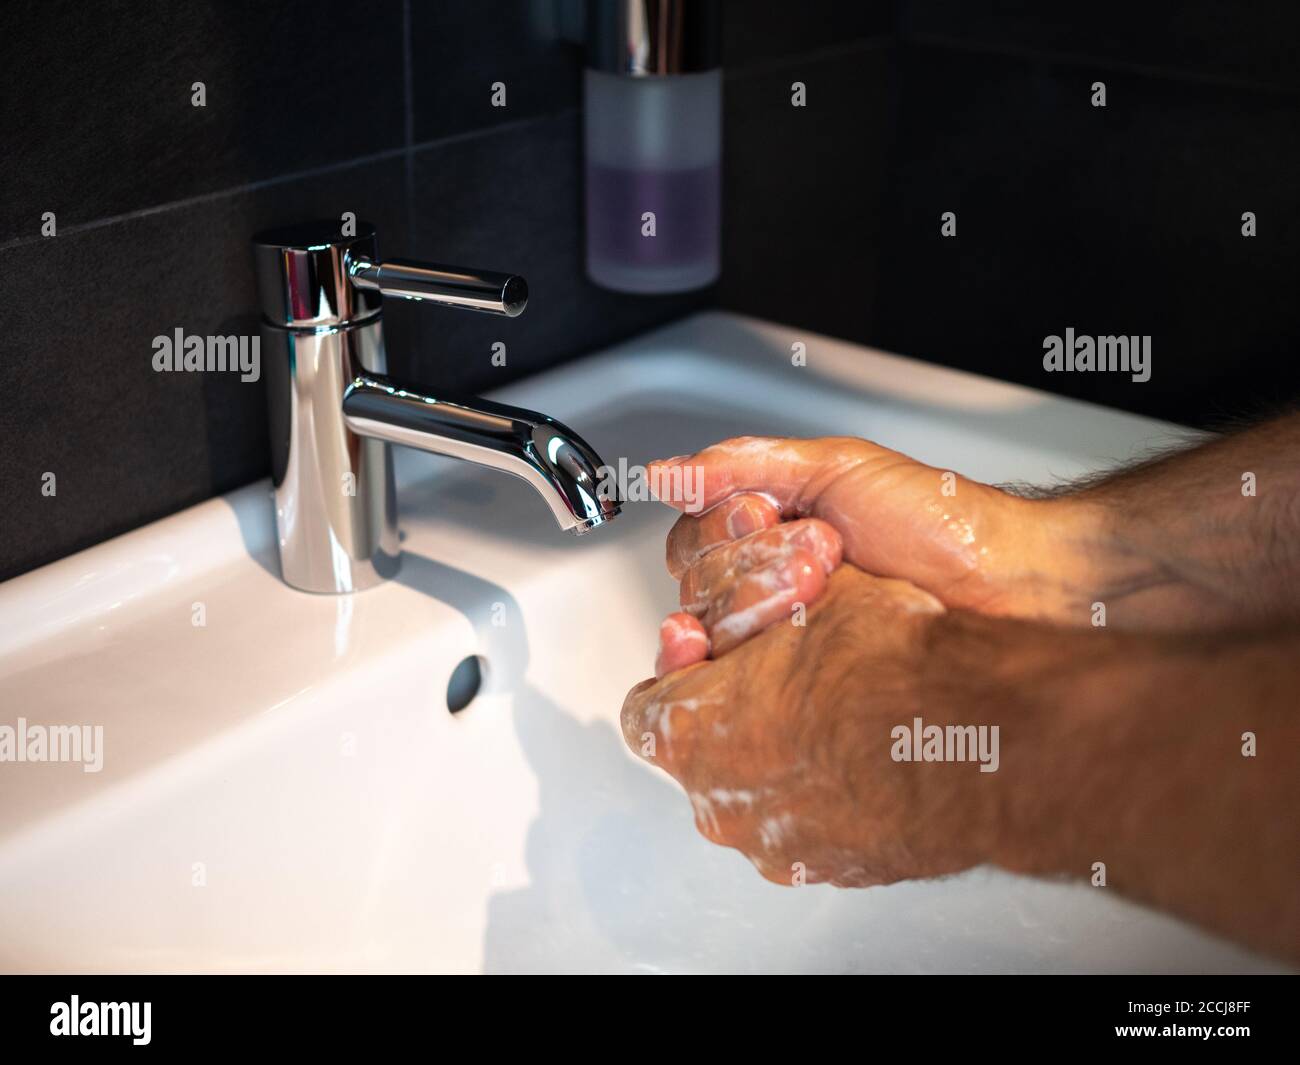 Handwäsche Körperpflege Mann waschen Hände reiben Seife für 20 Sekunden folgenden Schritten, Reinigung der Handgelenke und Spülen unter Wasser zu Hause Badezimmer. Stockfoto